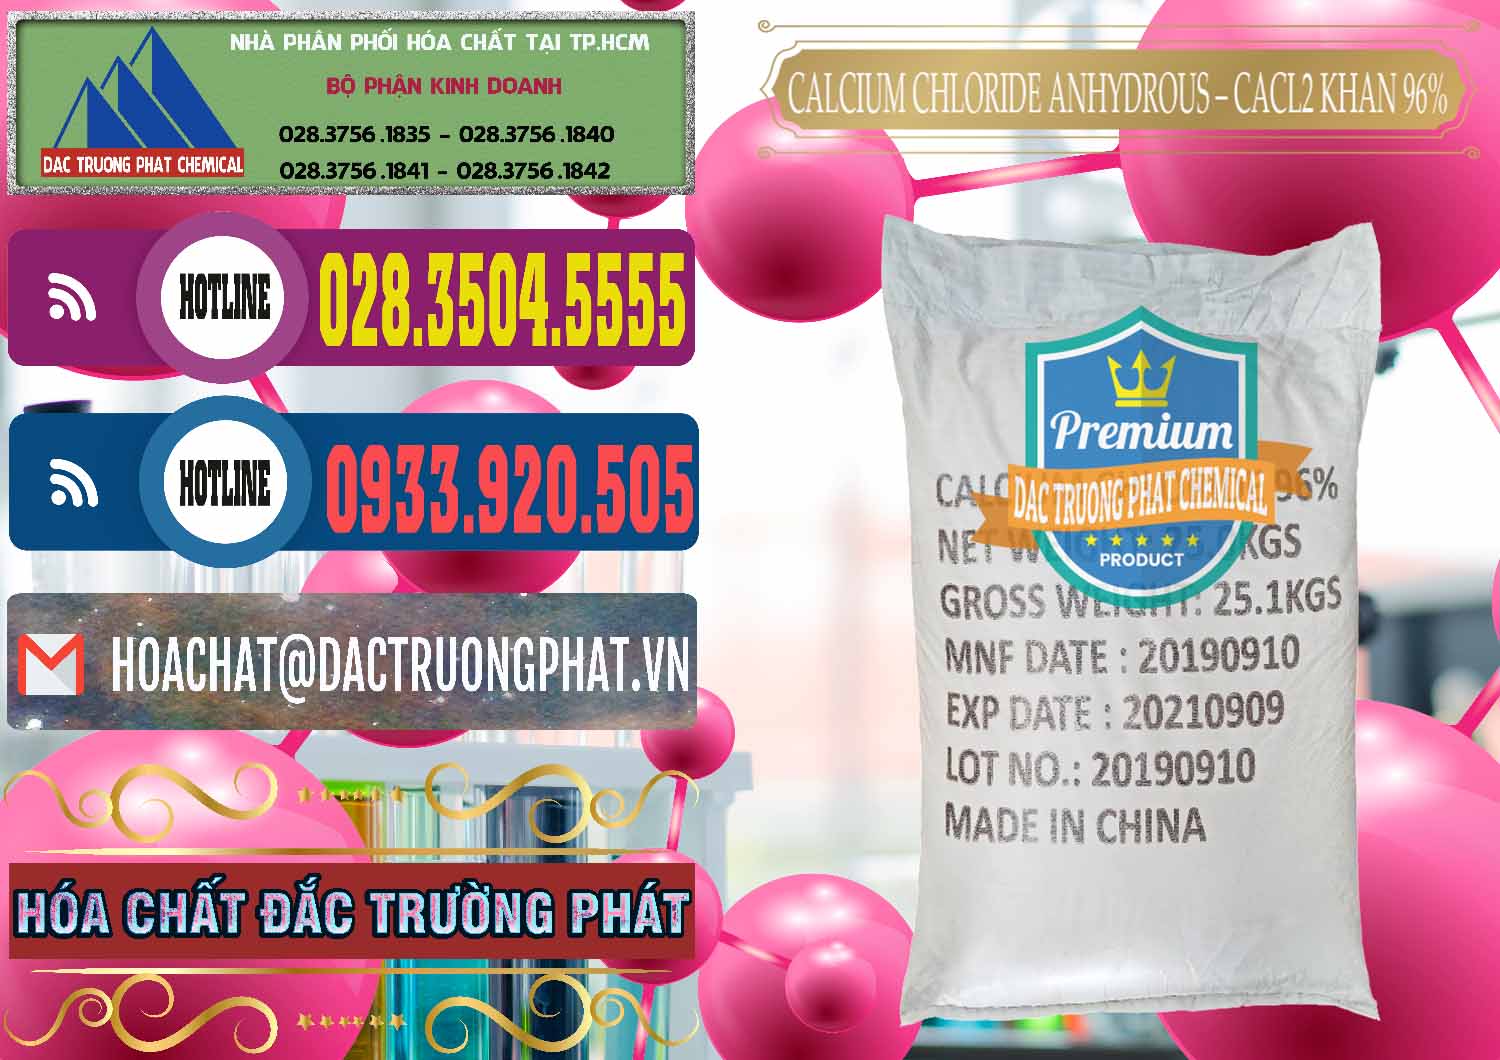 Cty nhập khẩu và bán CaCl2 – Canxi Clorua Anhydrous Khan 96% Trung Quốc China - 0043 - Chuyên phân phối _ bán hóa chất tại TP.HCM - muabanhoachat.com.vn